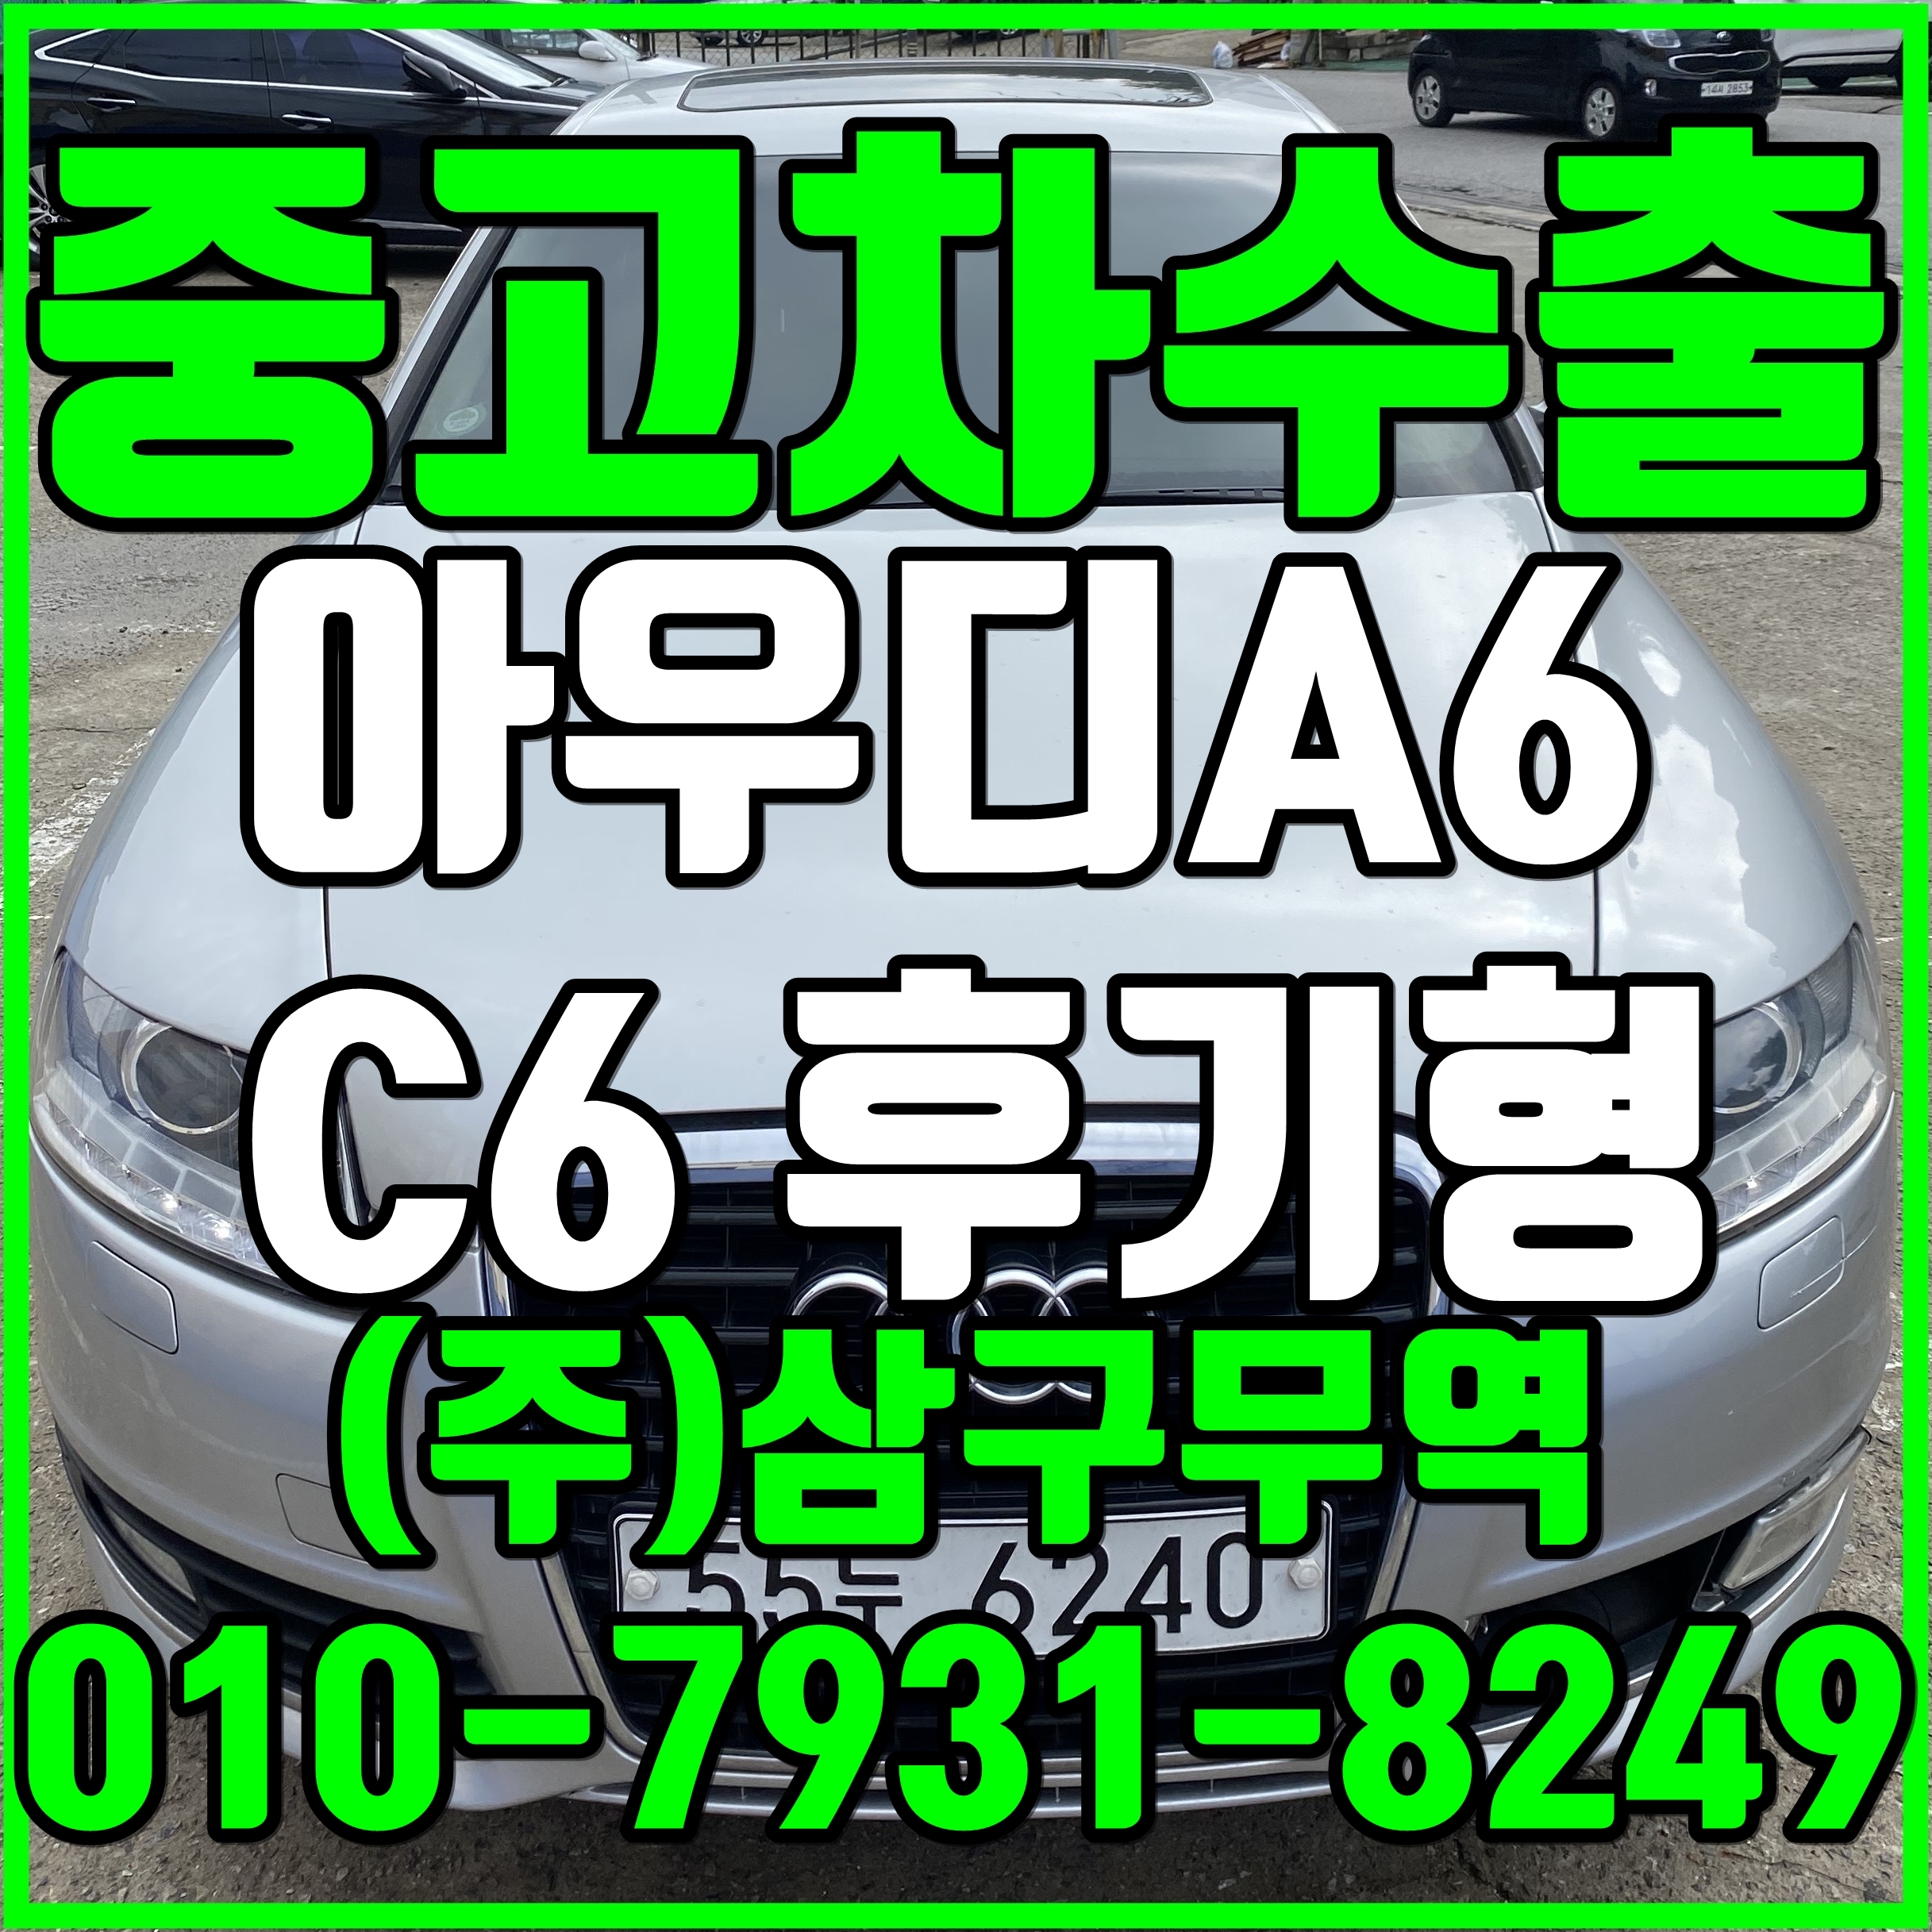 중고차수출 경기안산 아우디A6 C6후기형 수출매입후기 